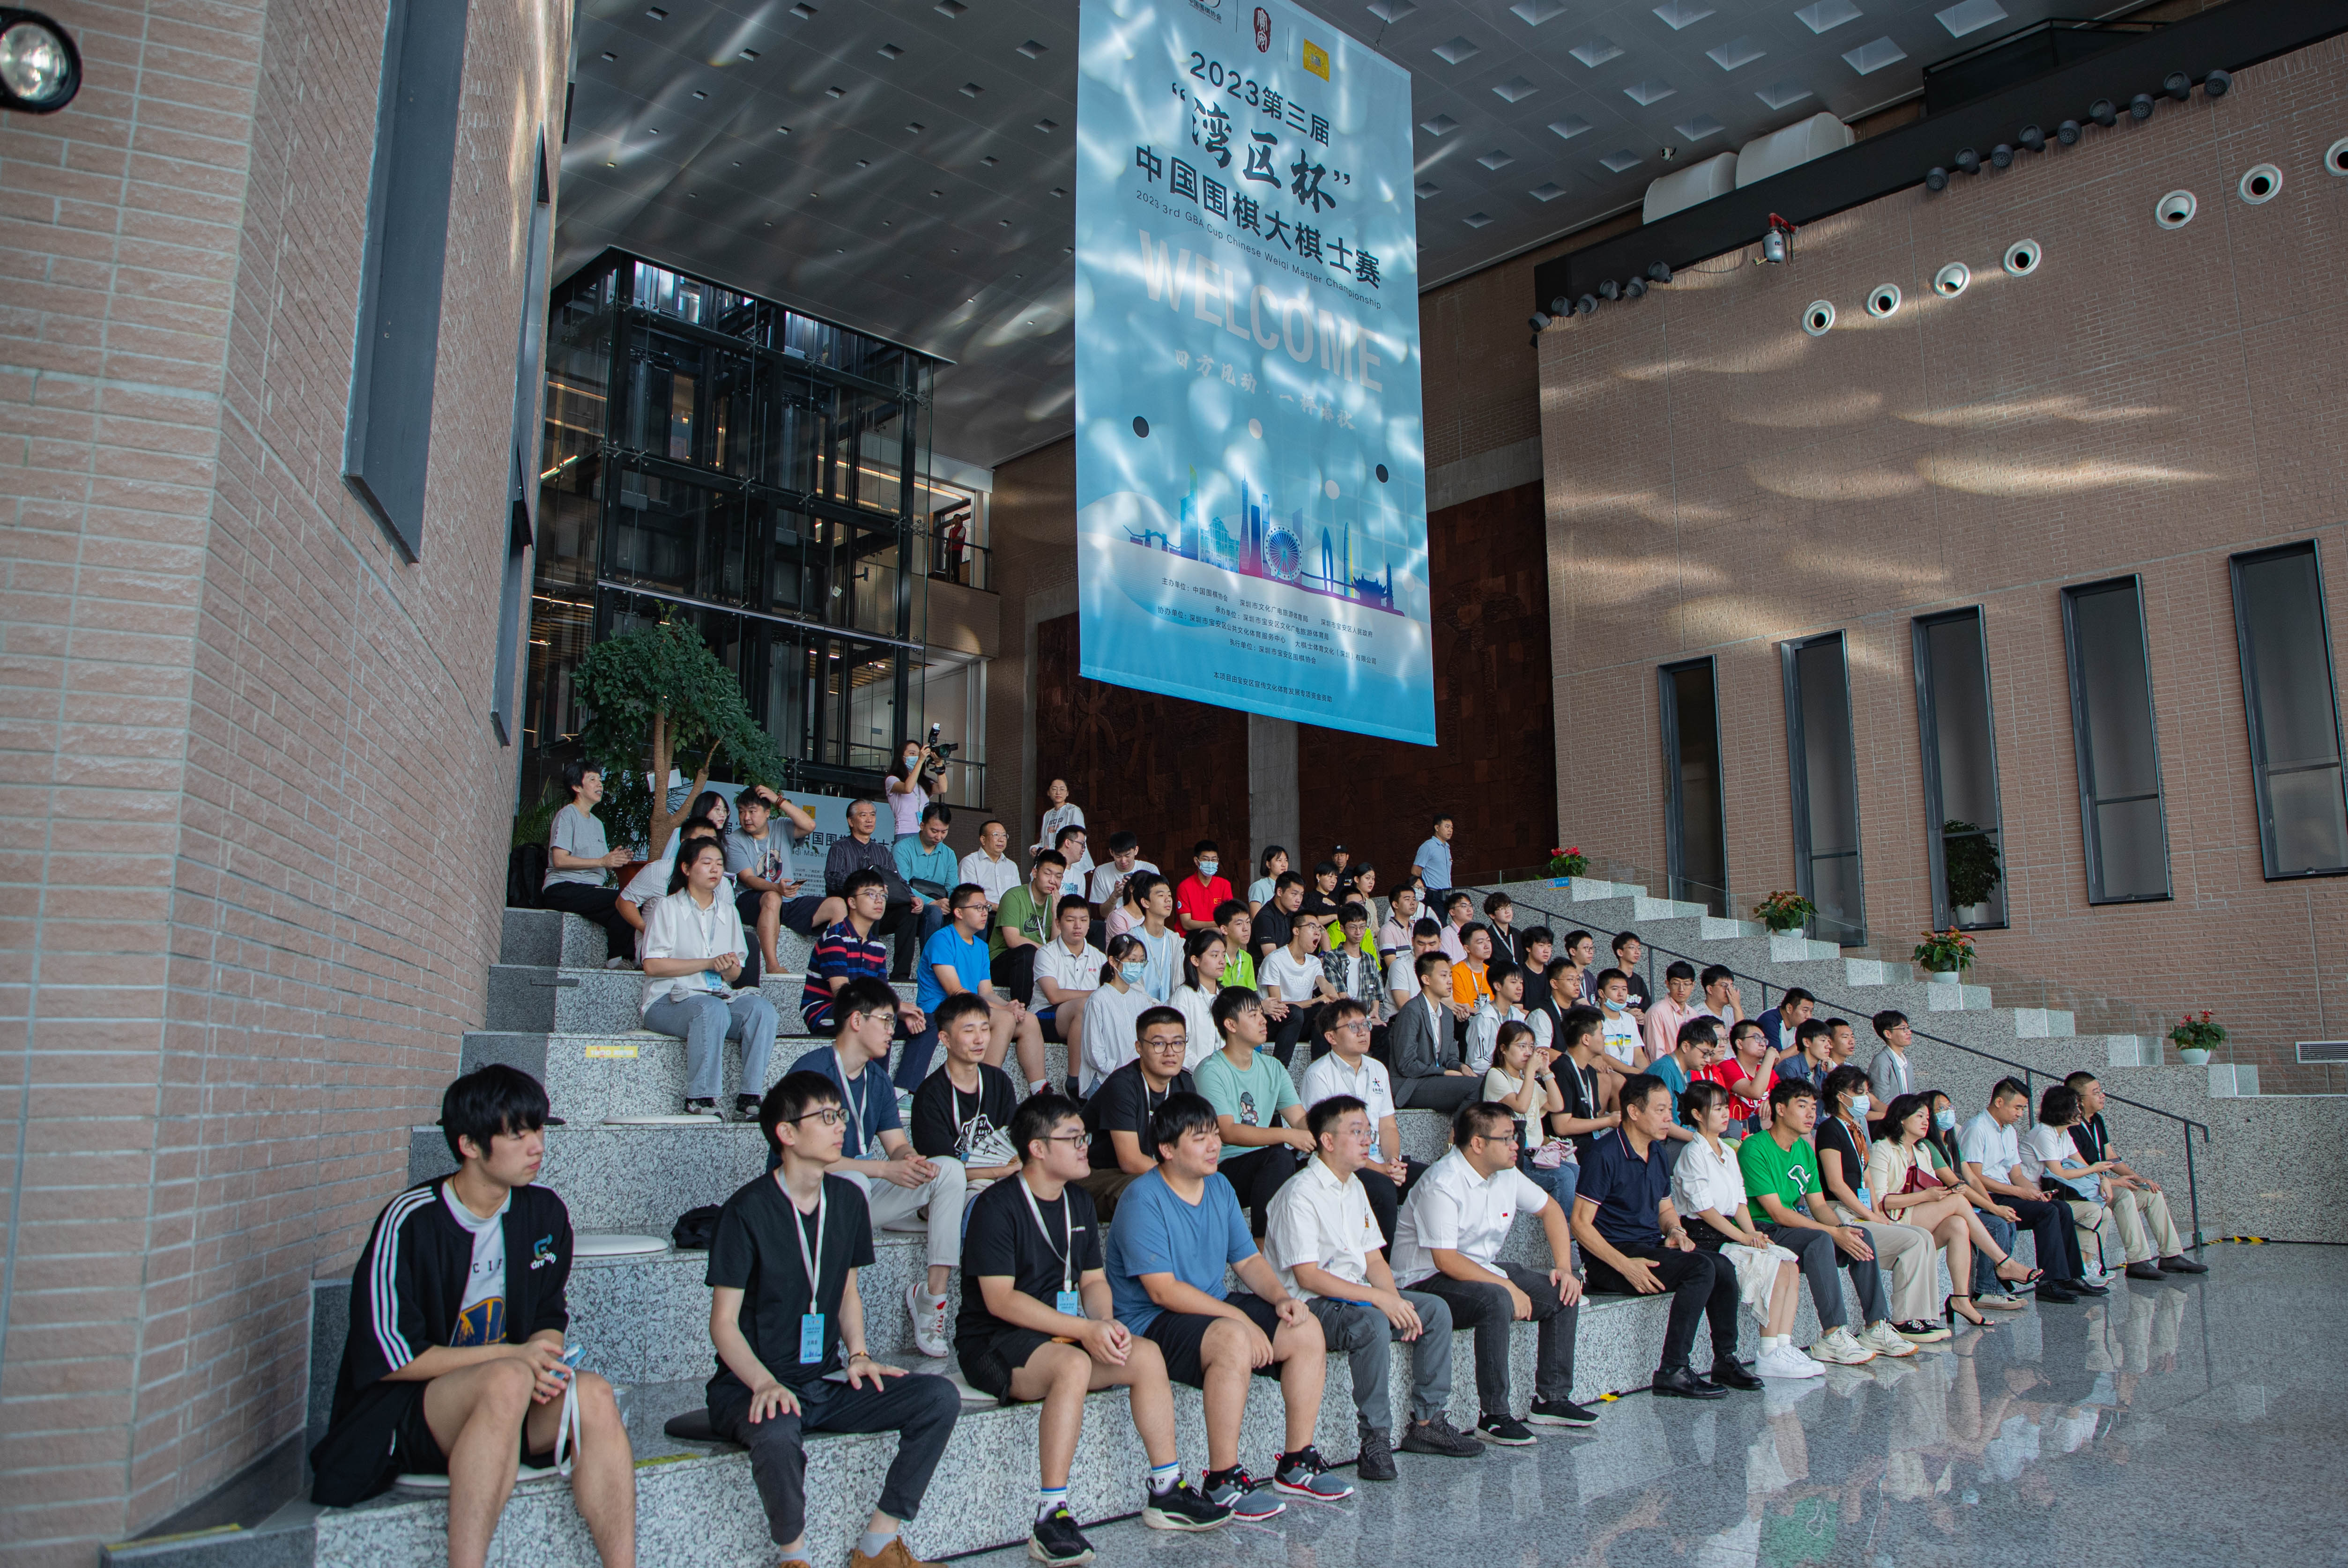 第三届“湾区杯”中国围棋大棋士赛预选赛在宝安开幕